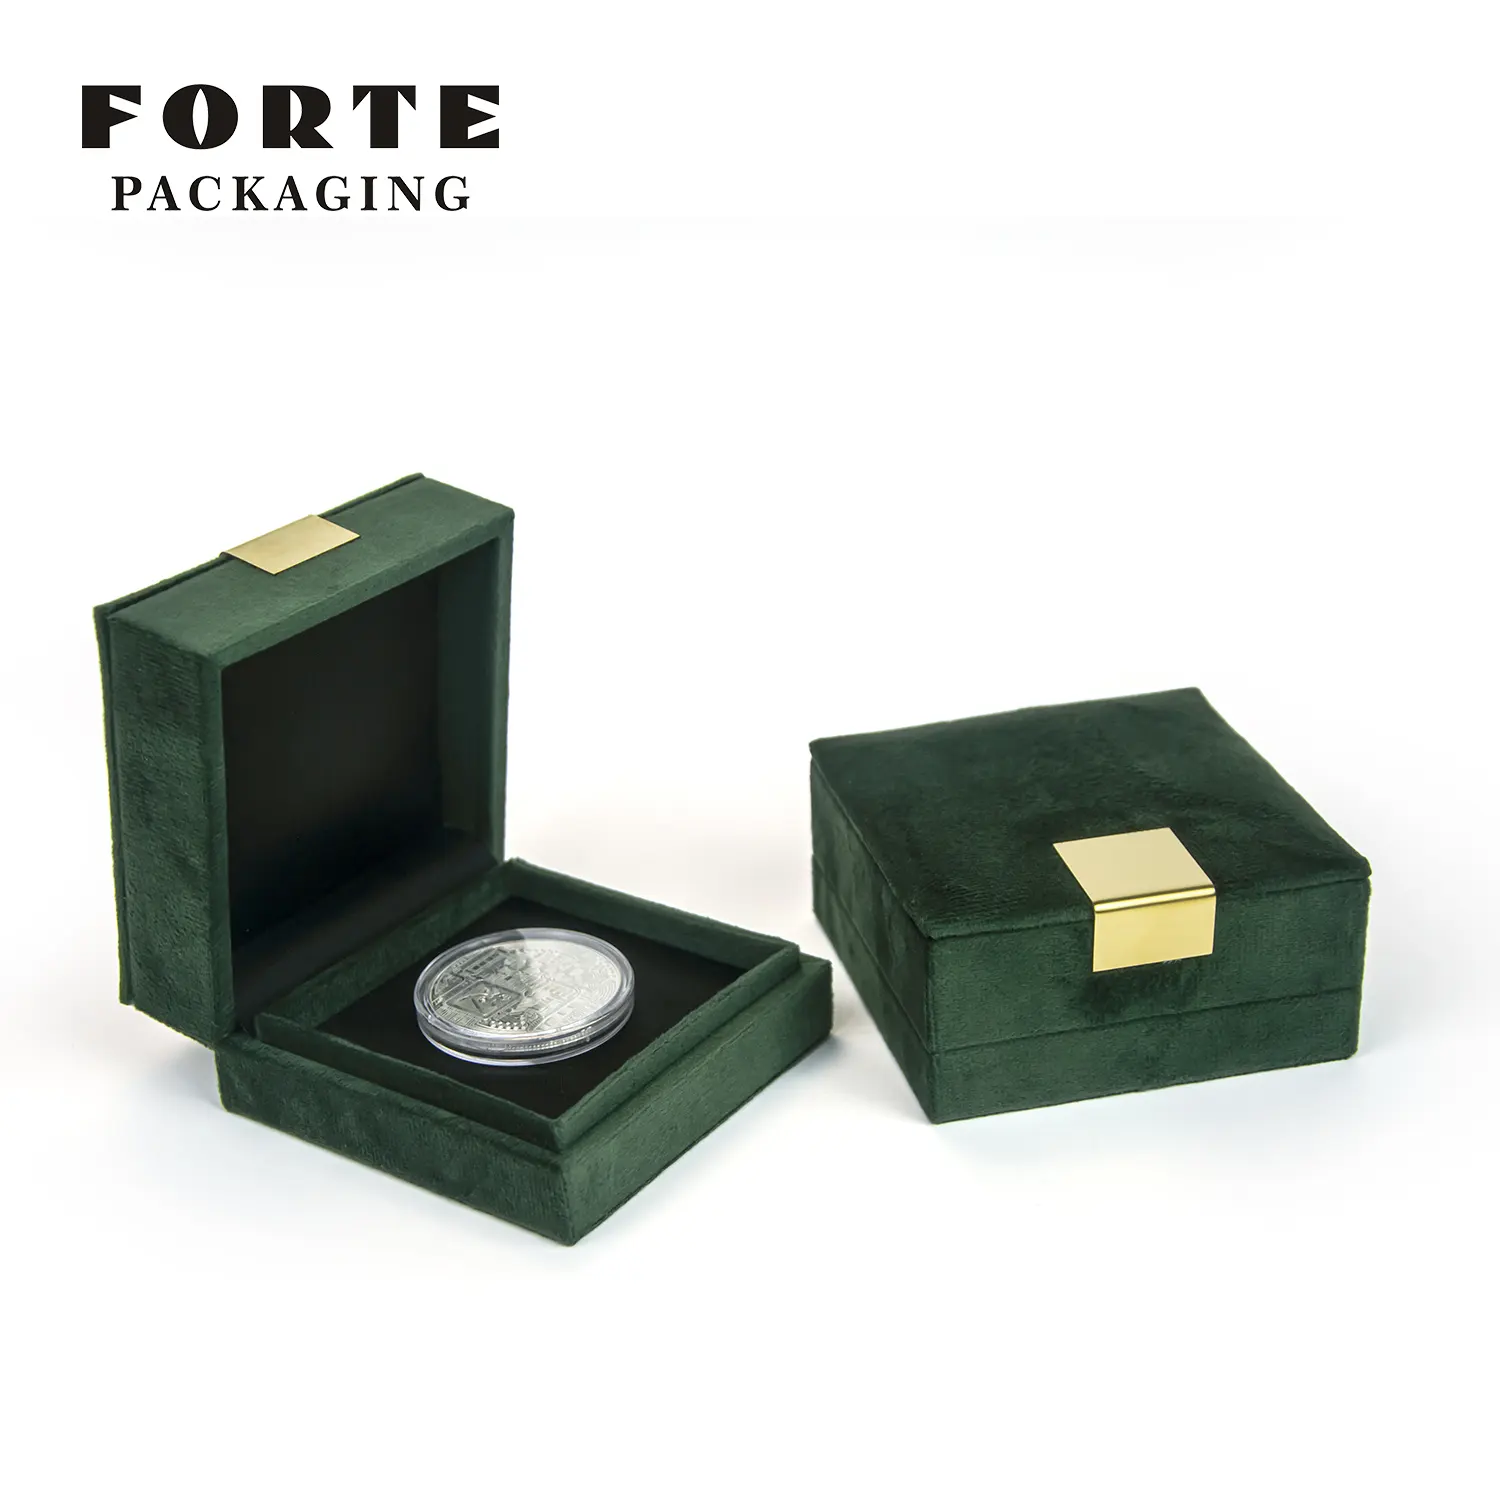 FORTE haut de gamme Deutschland capsule or pièce emballage boîte argent médaille boîte royale noble pièce de monnaie avec personnalisé